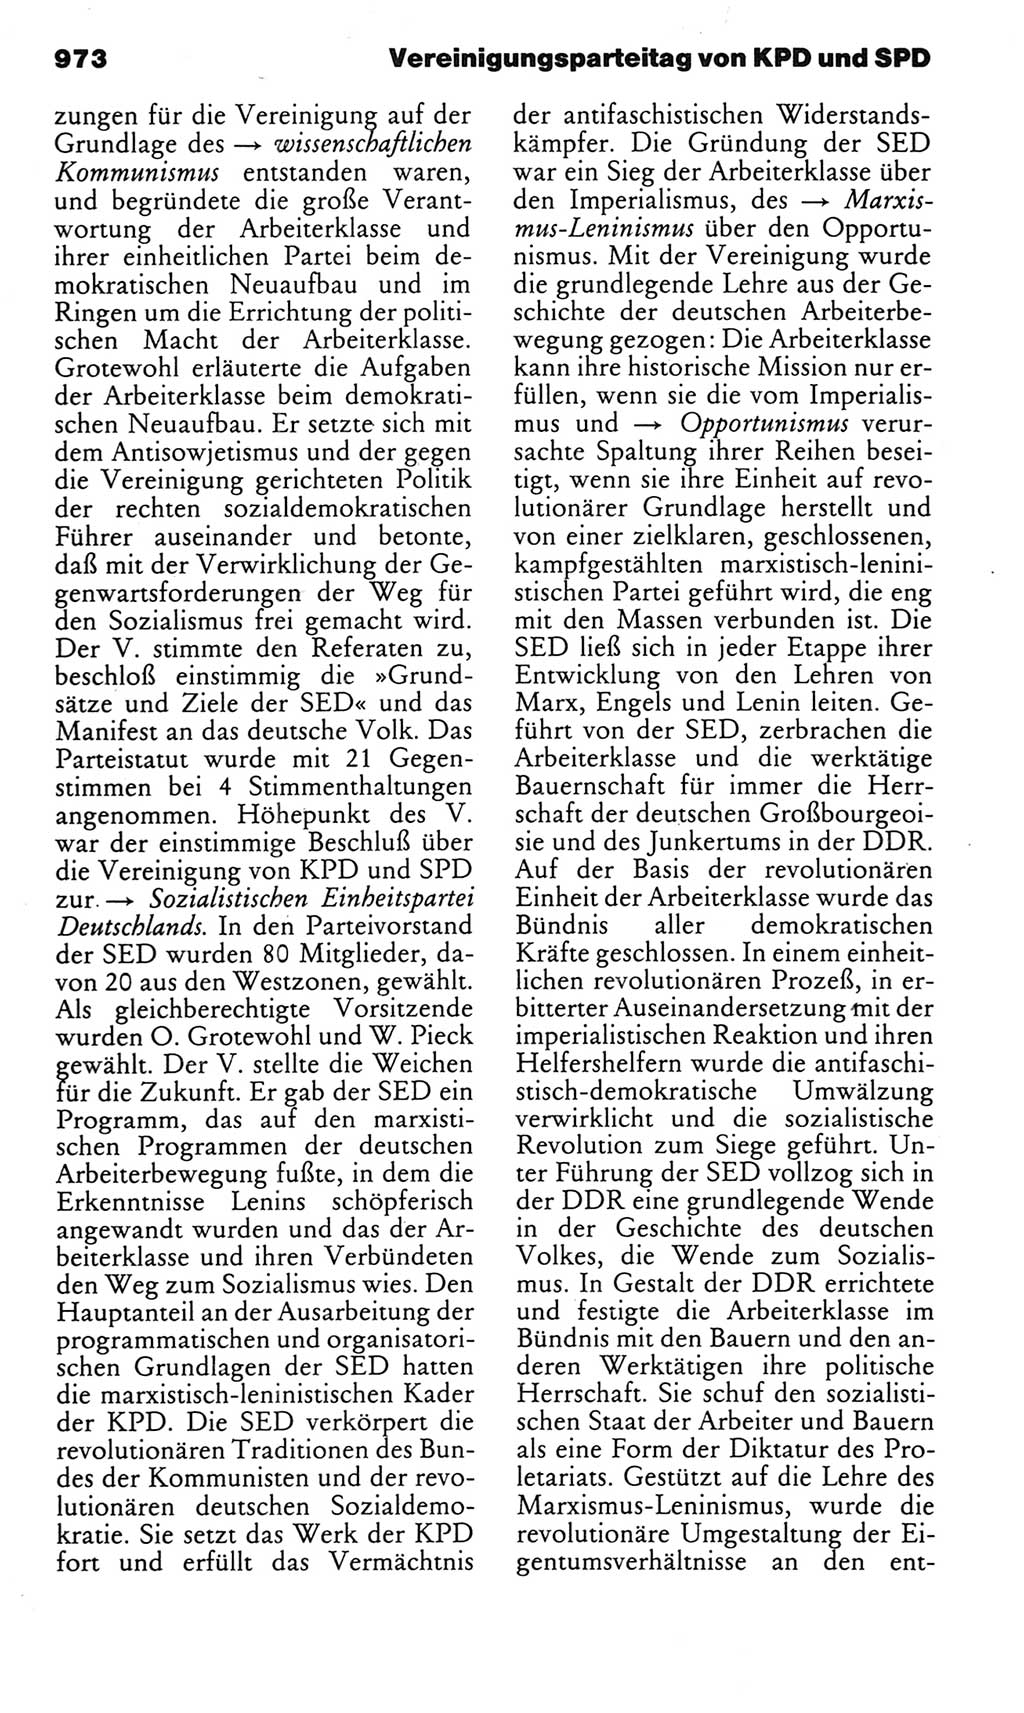 Kleines politisches Wörterbuch [Deutsche Demokratische Republik (DDR)] 1983, Seite 973 (Kl. pol. Wb. DDR 1983, S. 973)